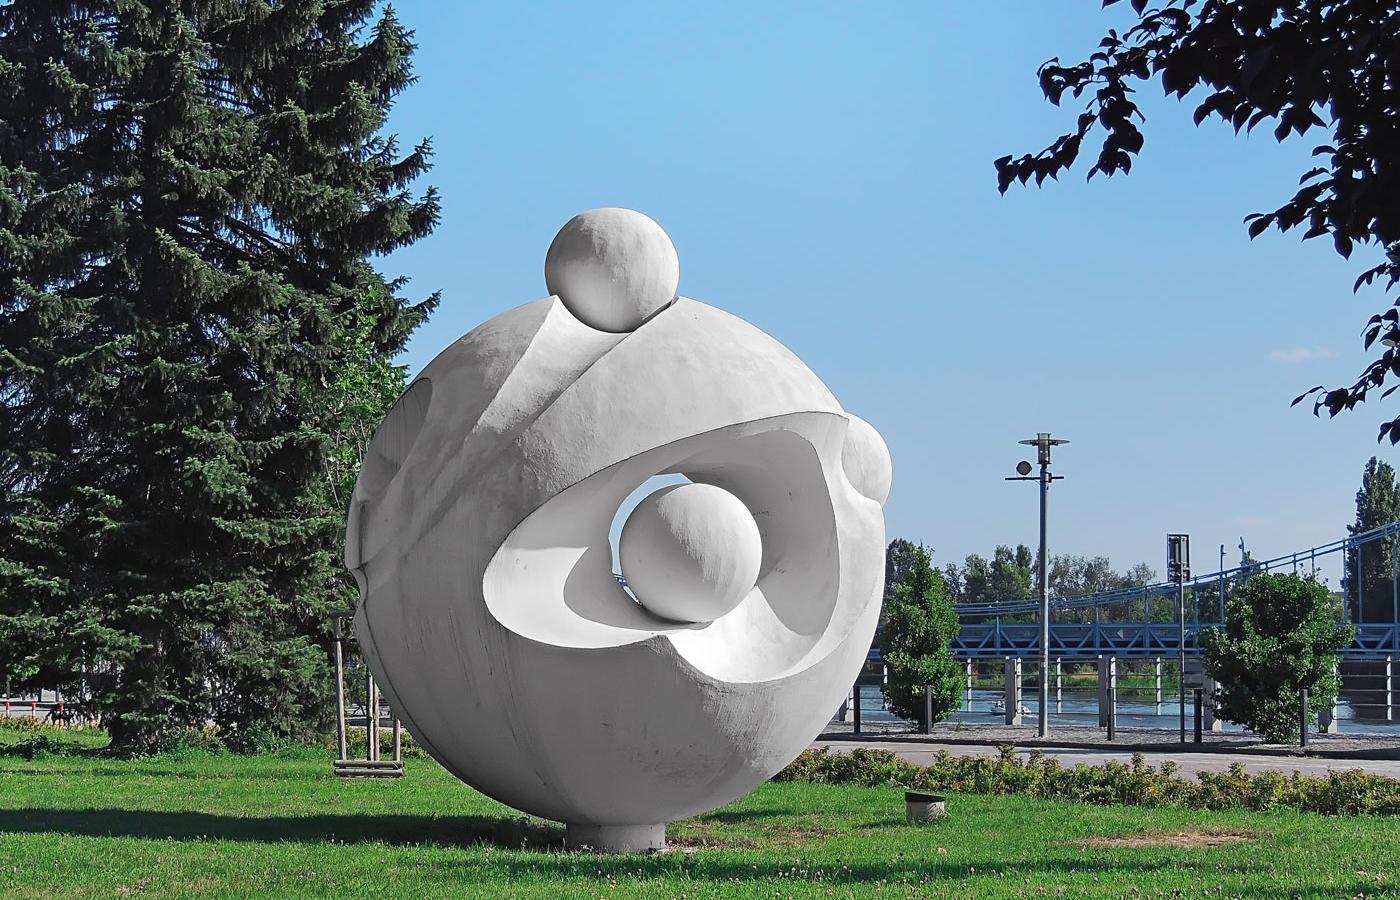 Rzeźba zatytułowana „Atom”, Wrocław.